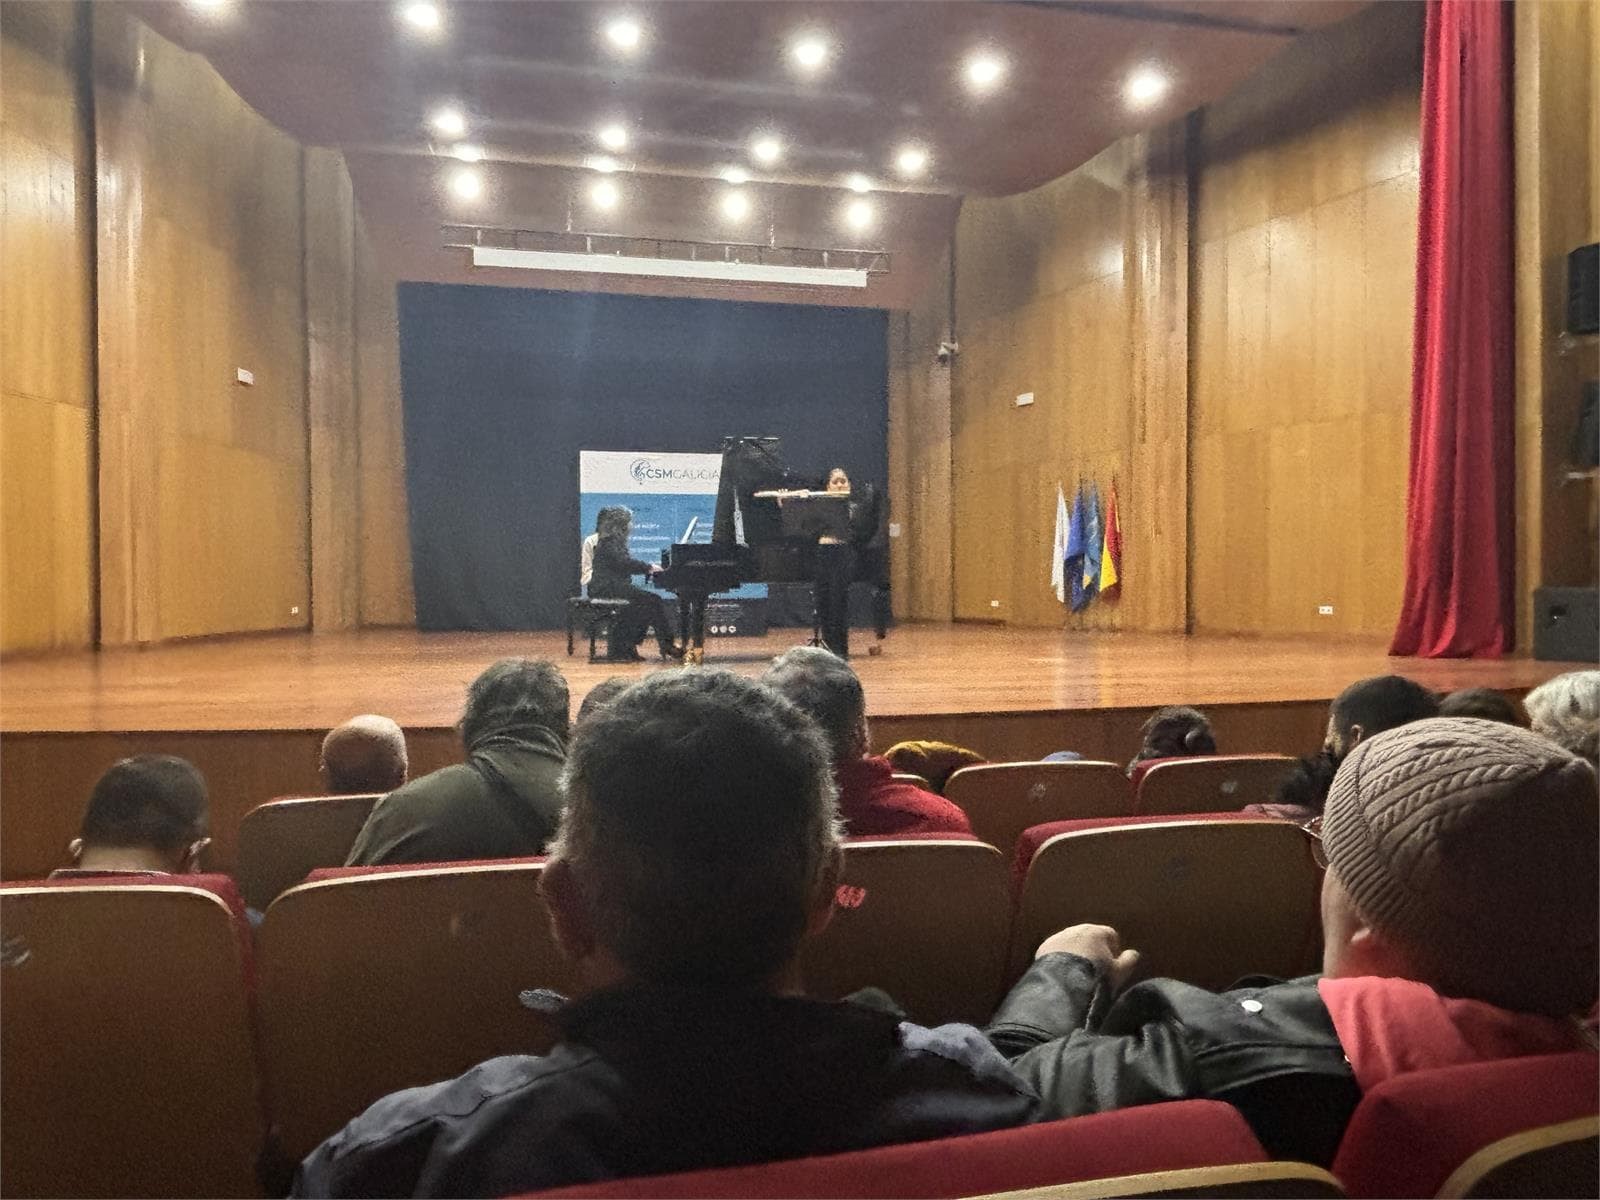 LAR disfruta de un concierto de música de la mano de CSM Galicia - Imagen 2